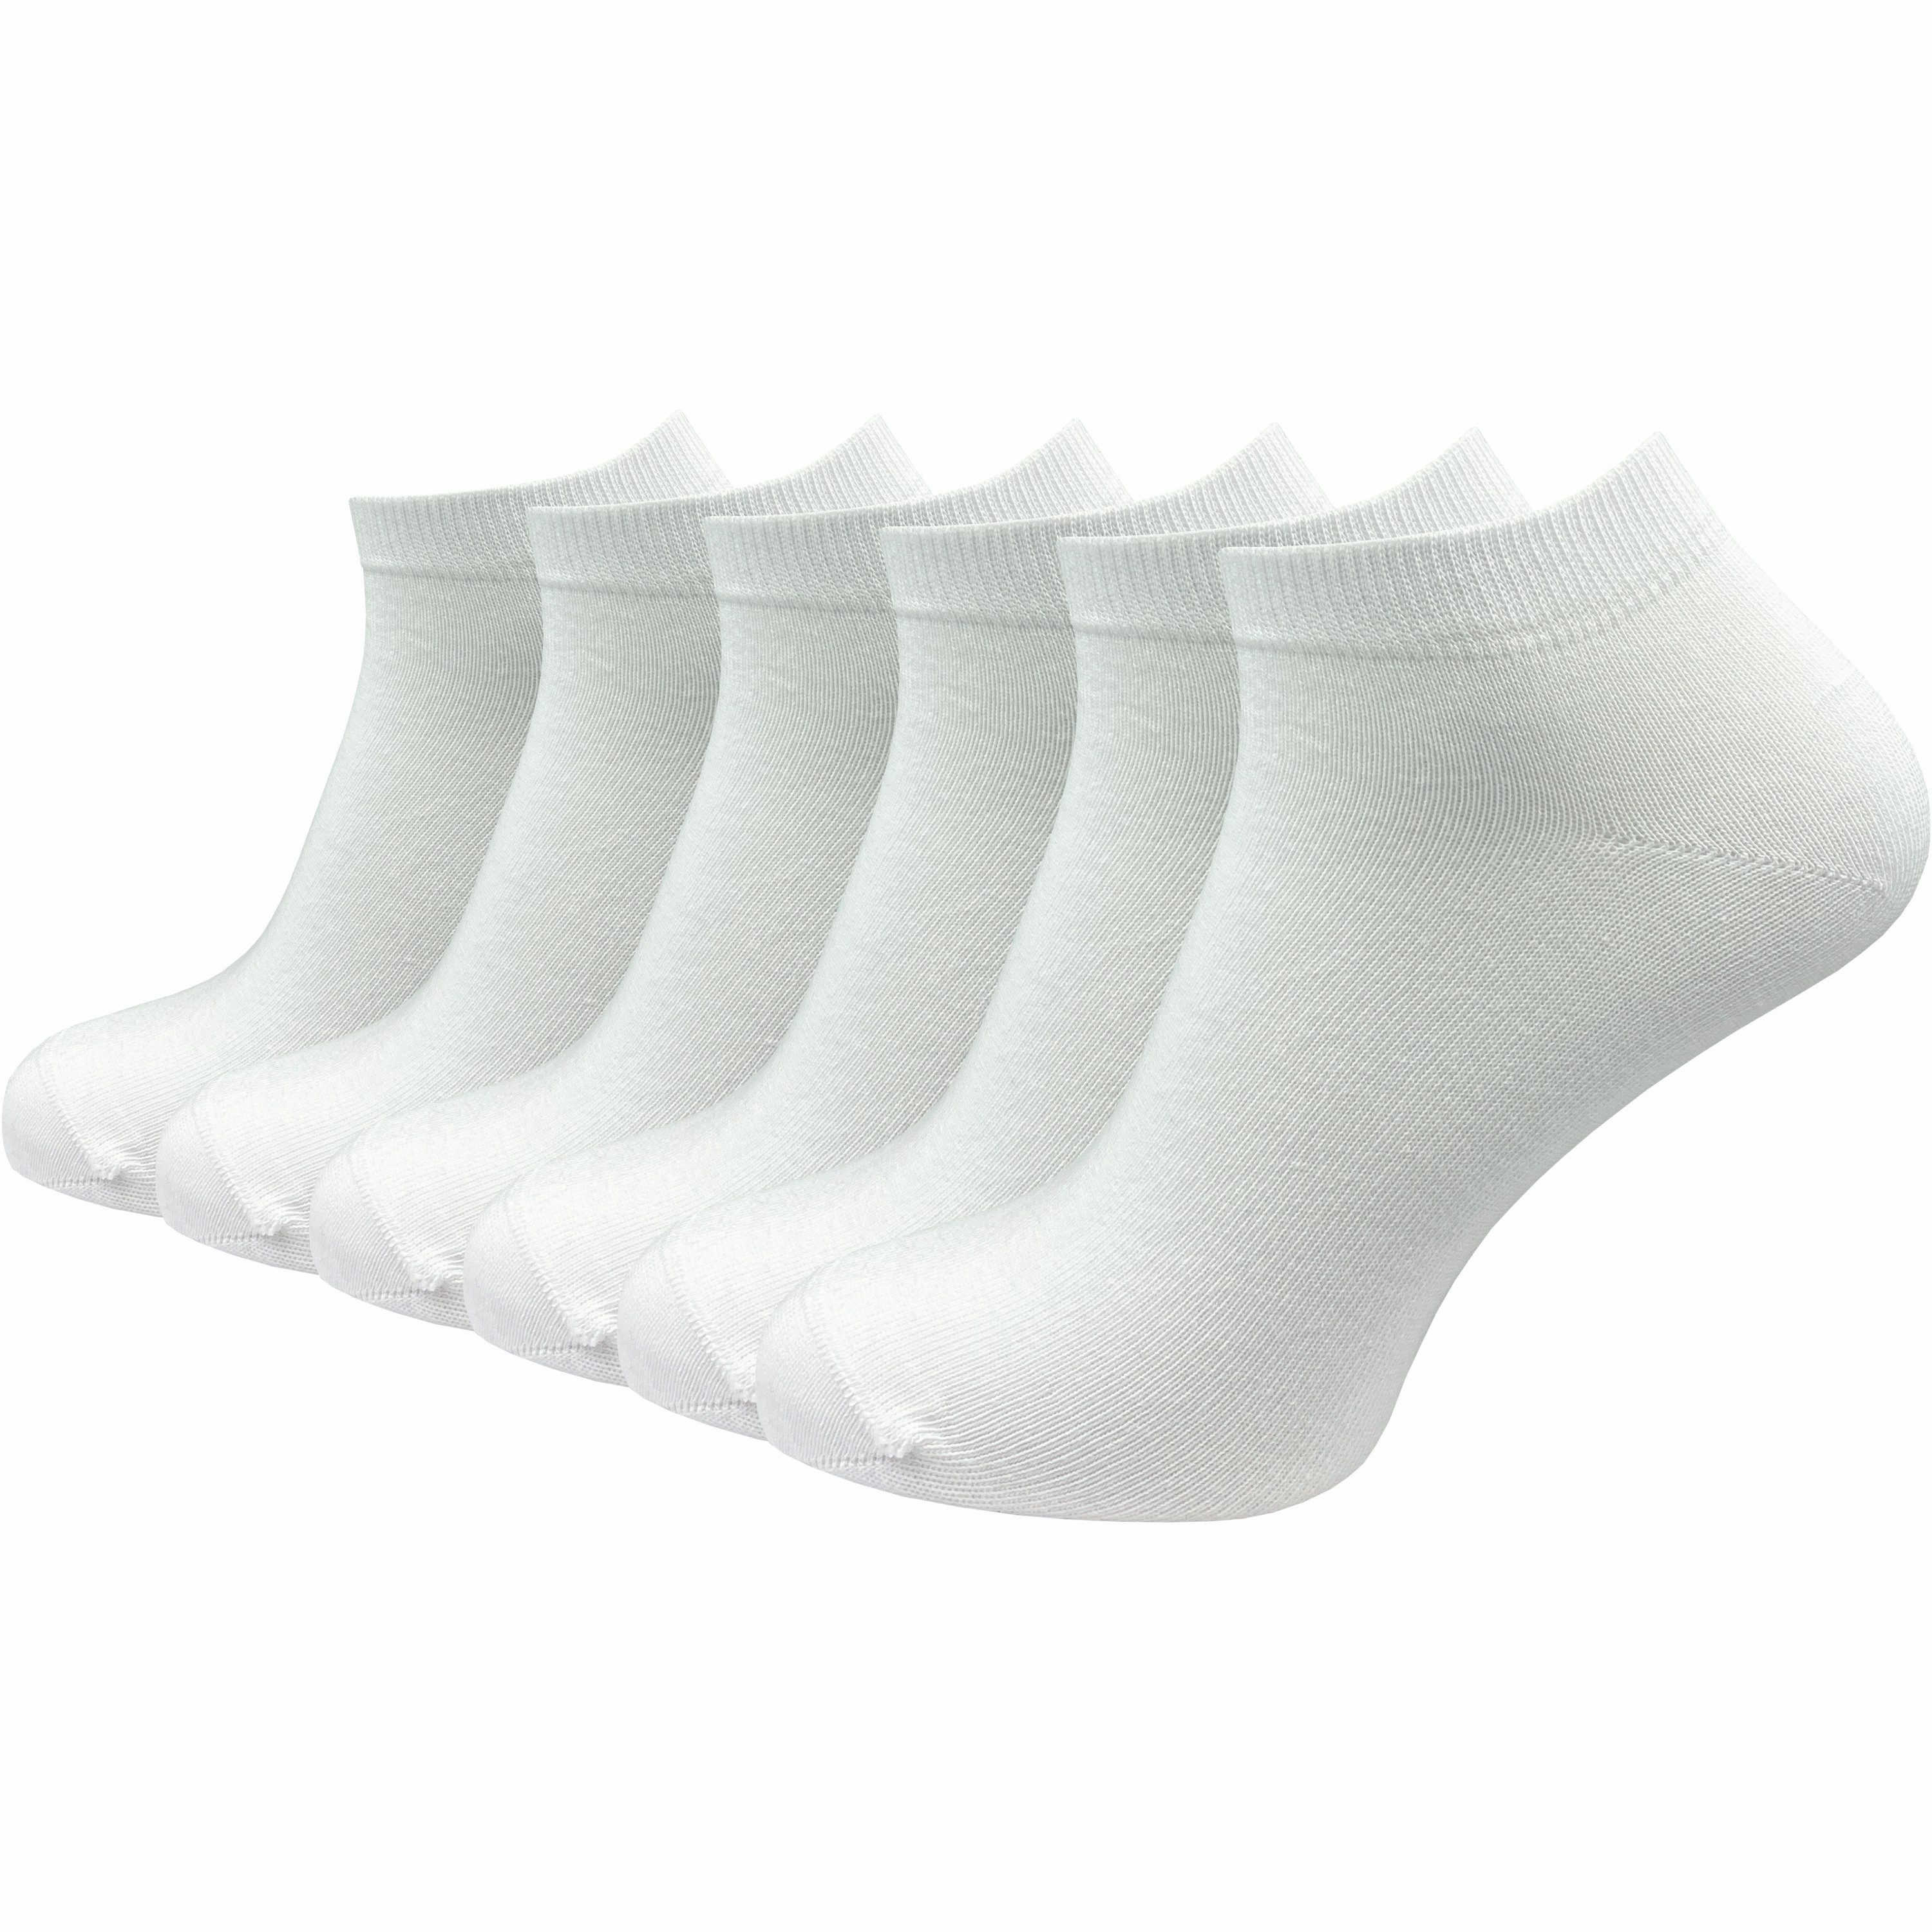 GAWILO Sneakersocken aus 100% Baumwolle für Herren in schwarz & weiß (6-Paar) ohne drückende Naht über den Zehen - atmungsaktiv - absolut blickdicht